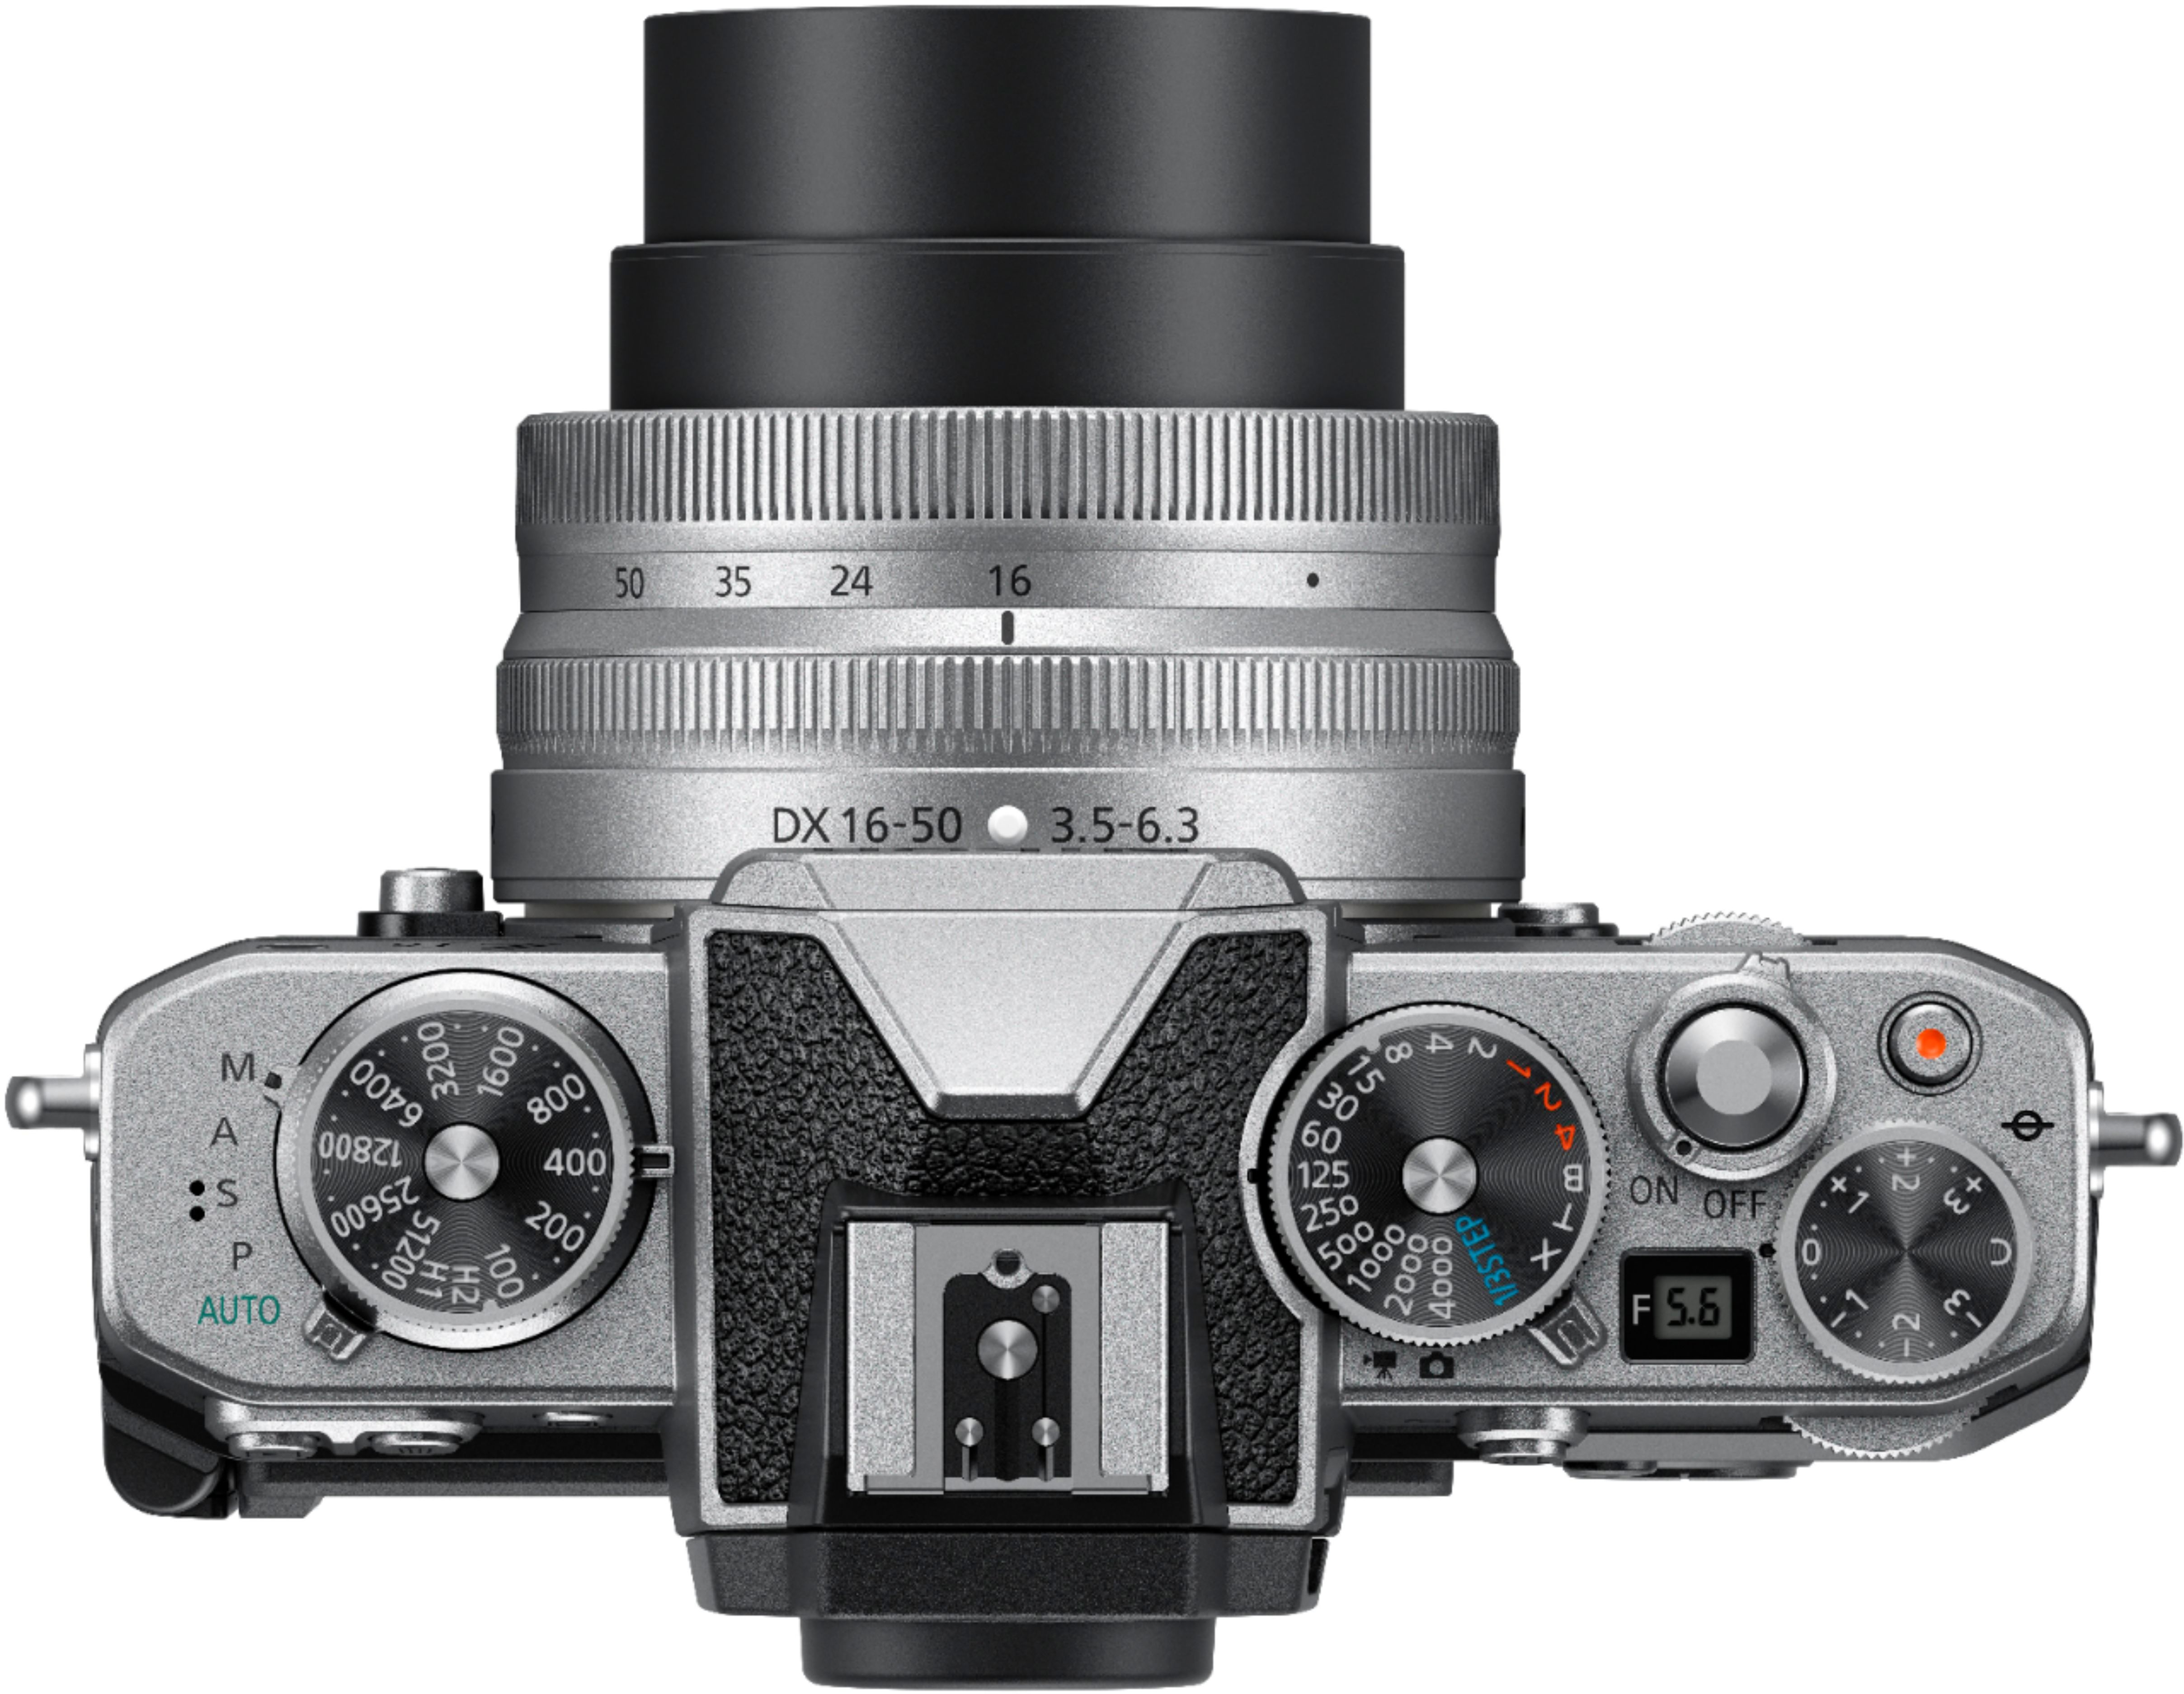 カメラ レンズ(ズーム) Nikon Z fc 4K Video Mirrorless Camera w/ NIKKOR Z DX 16-50mm f/3.5 